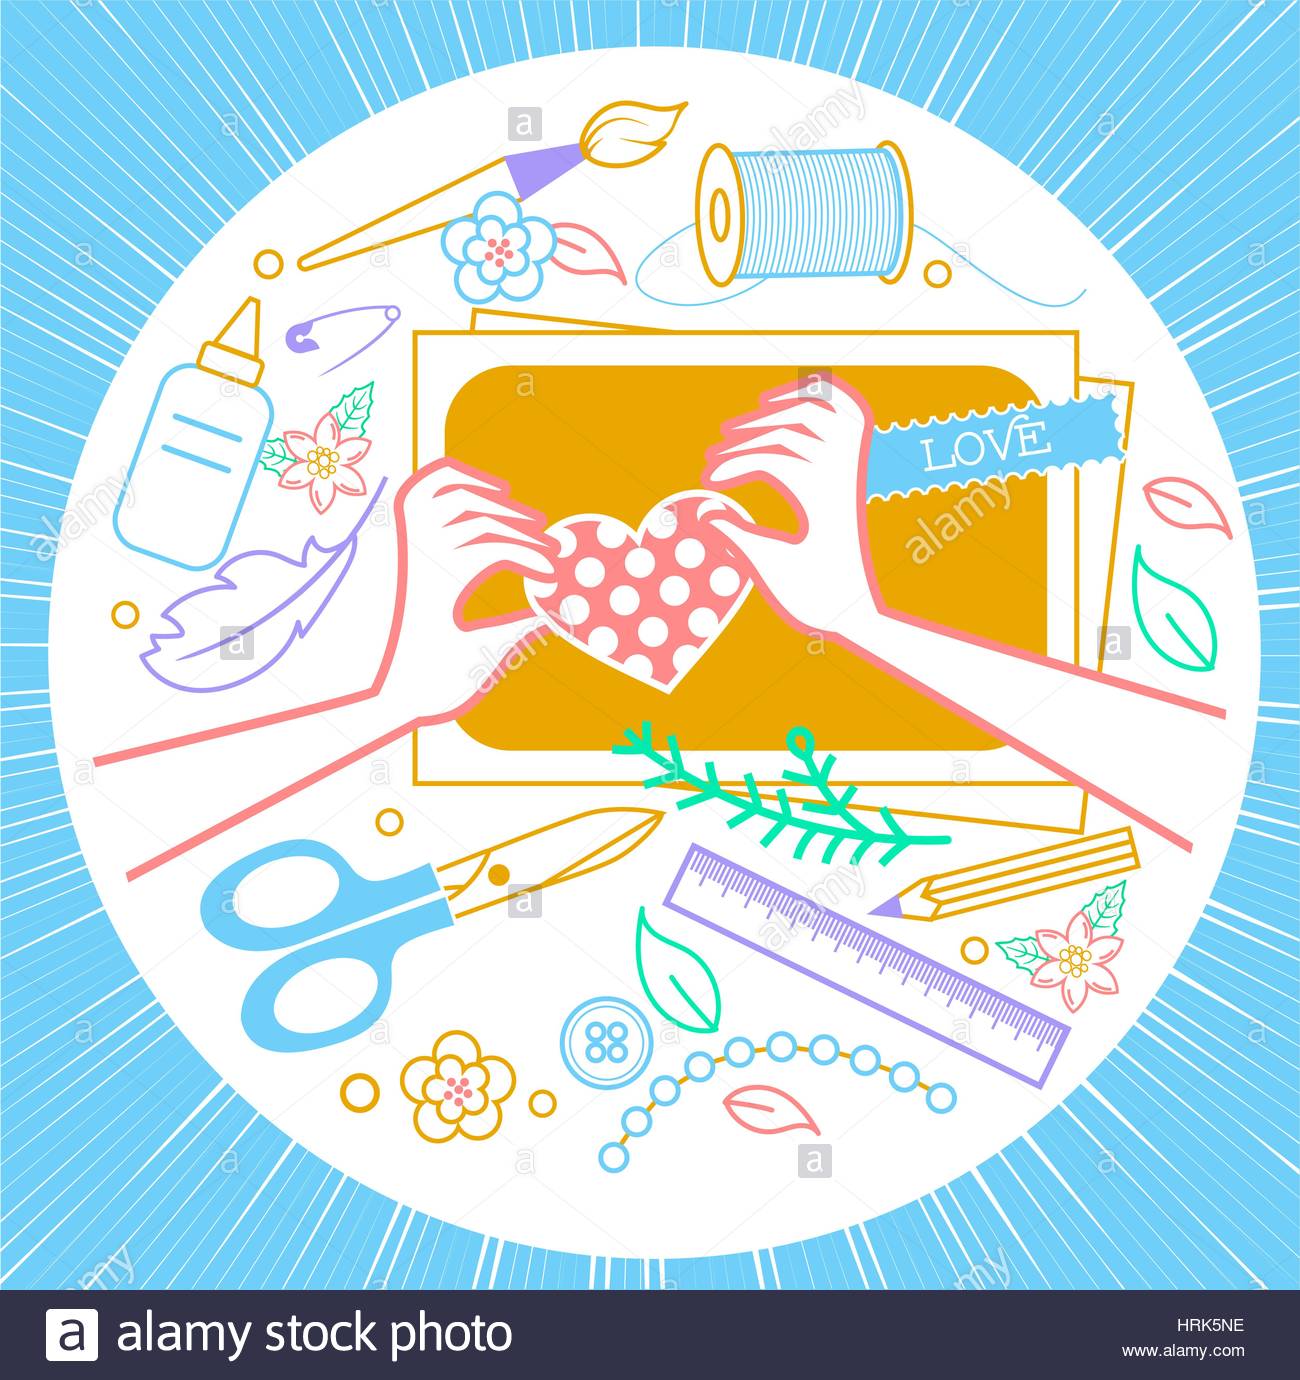 Arts and crafts, cut, scissor, scissors icon | Icon search engine